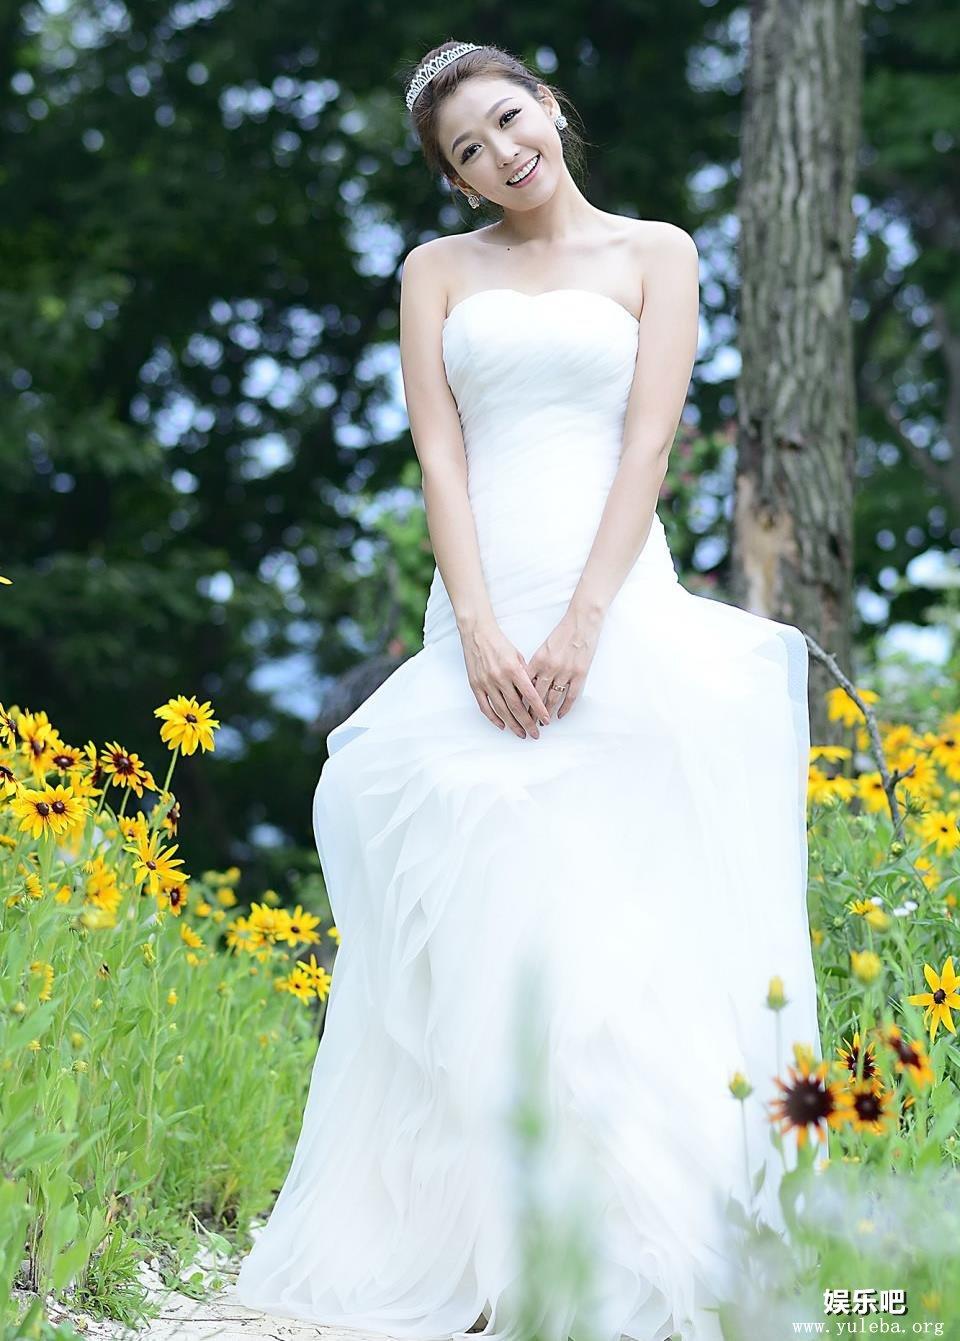 穿上婚纱的韩国美女李恩慧,穿上婚纱的韩国美女李恩慧